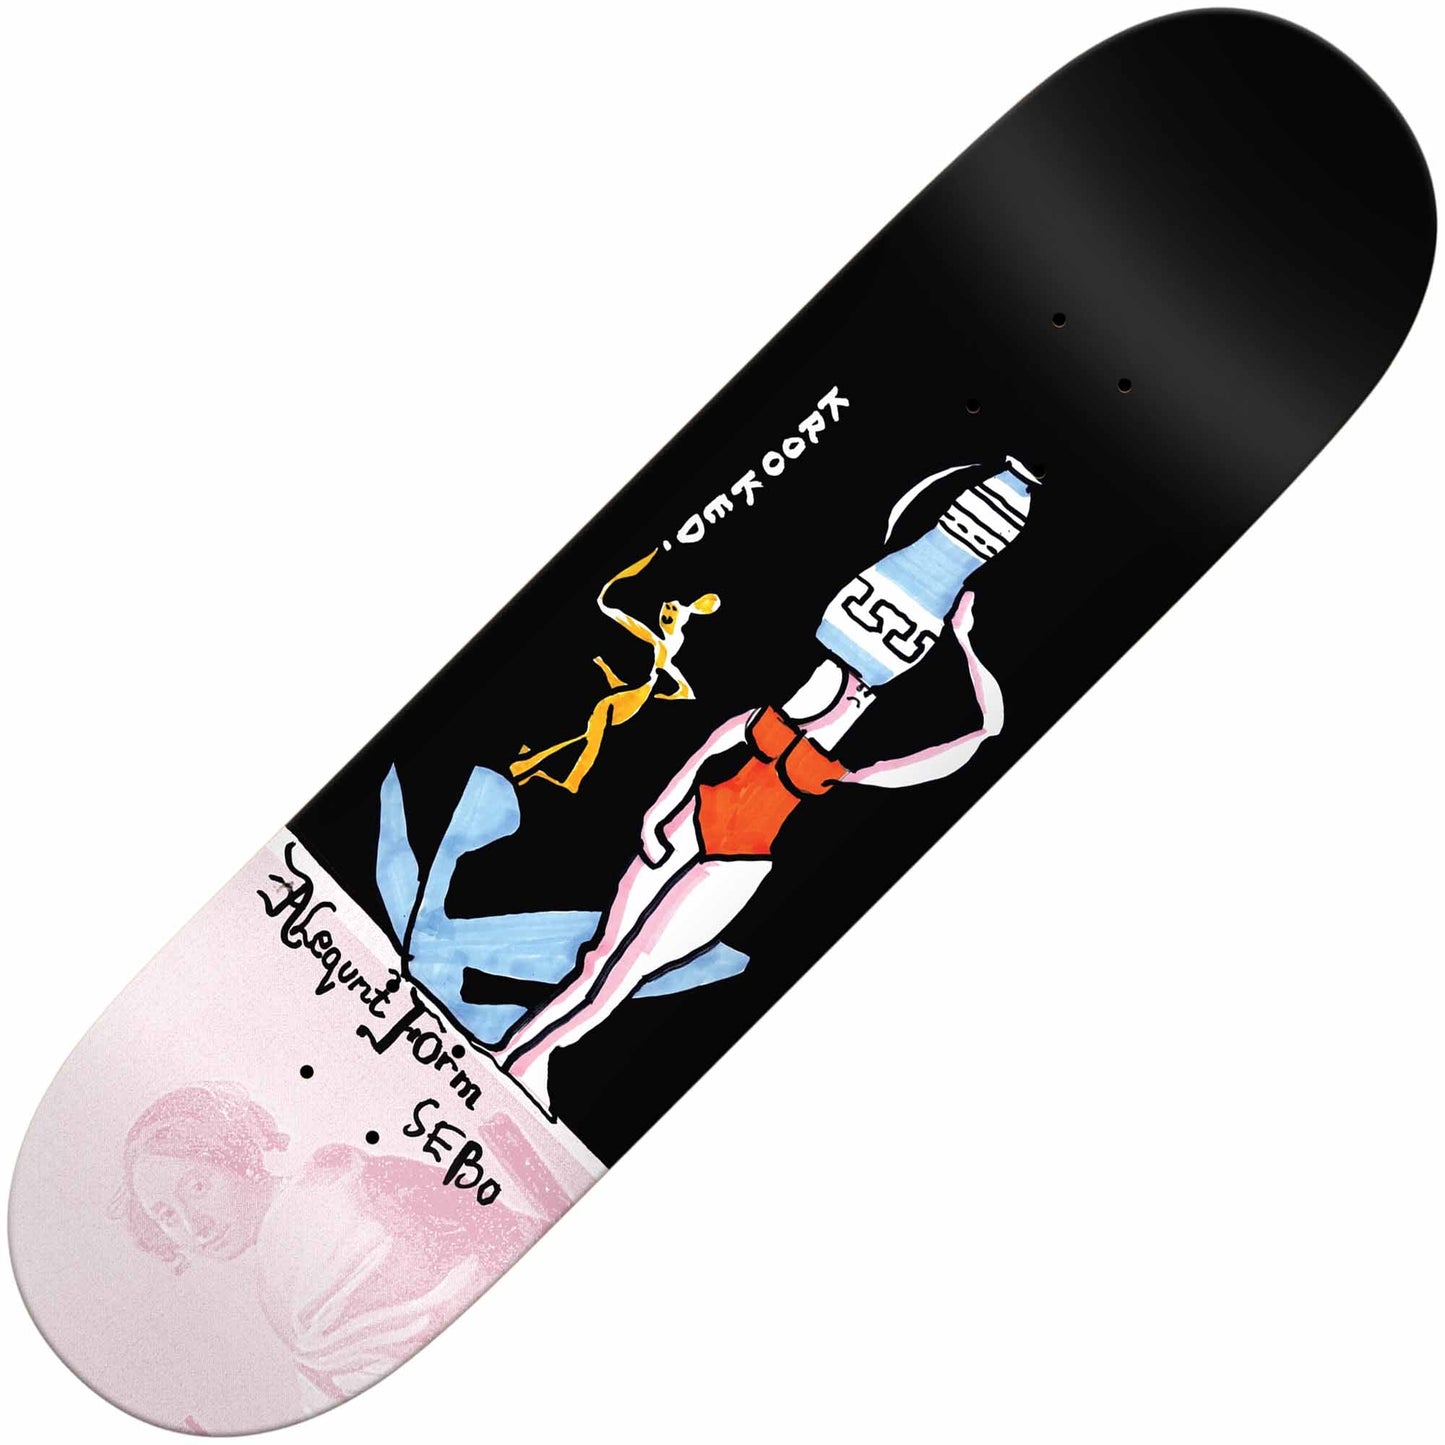 Krooked Sebo Vase Deck (8.06") - Tiki Room Skateboards - 1